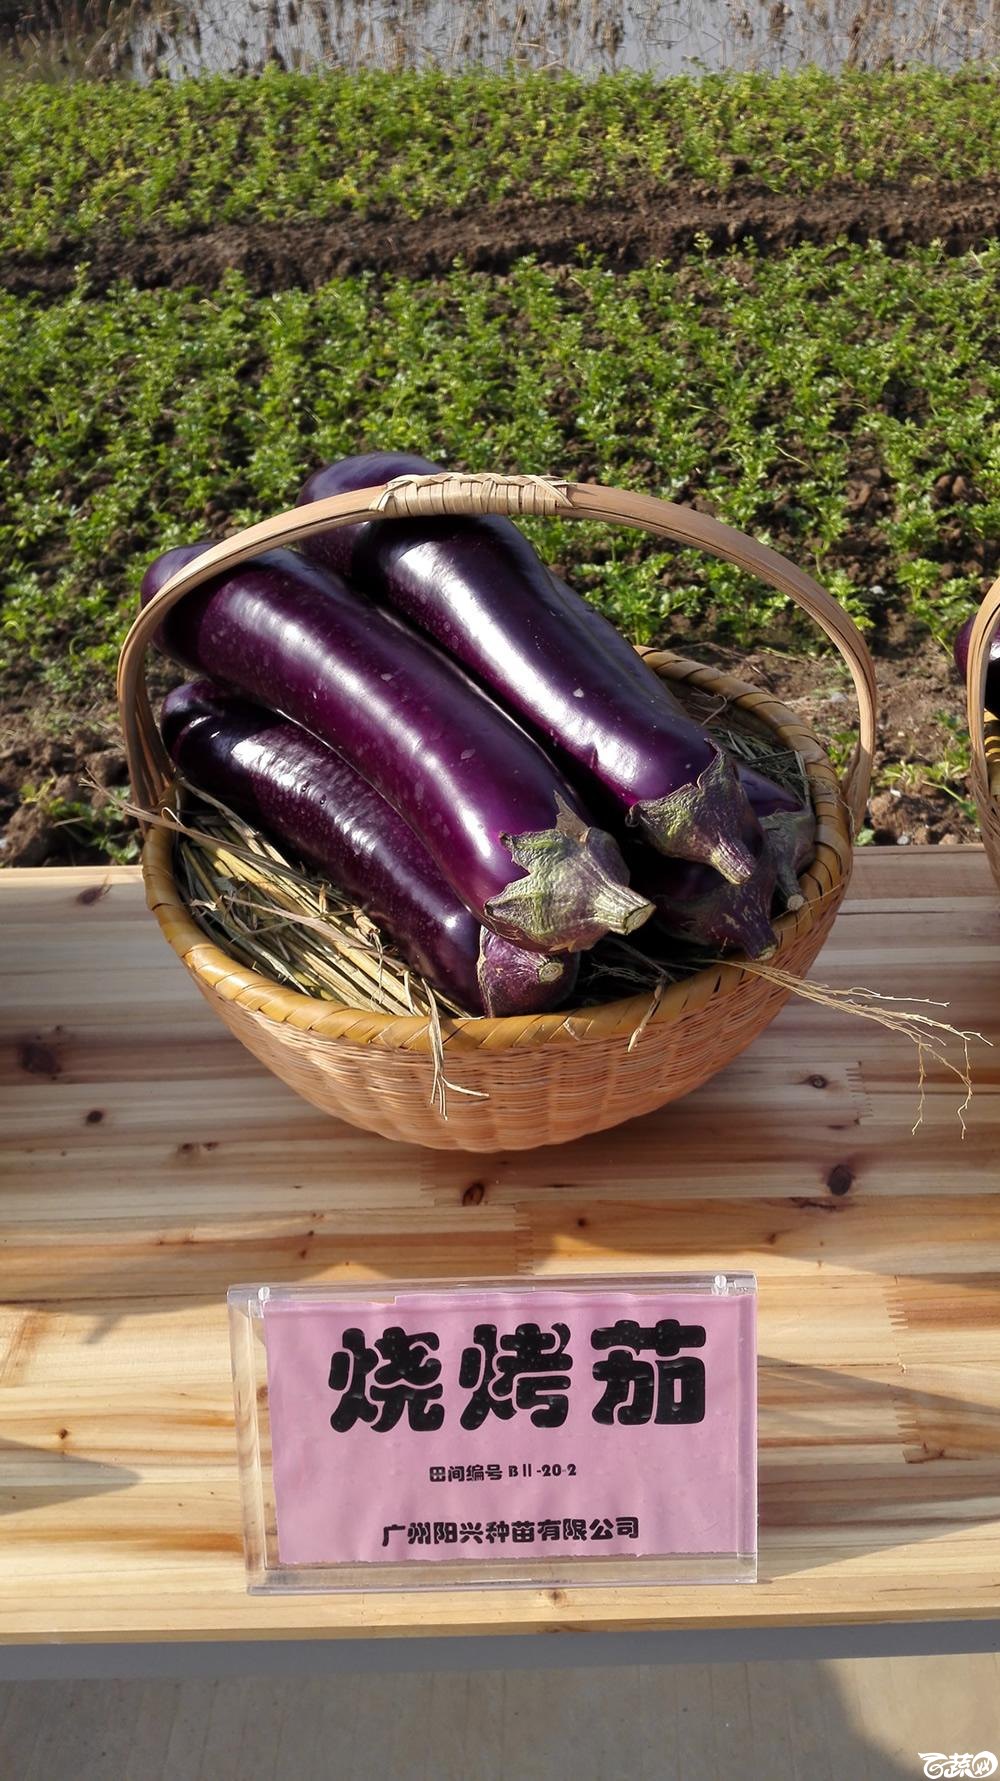 2014年12月10号广州市农科院南沙秋季蔬菜新品种展示会 茄子_015.jpg